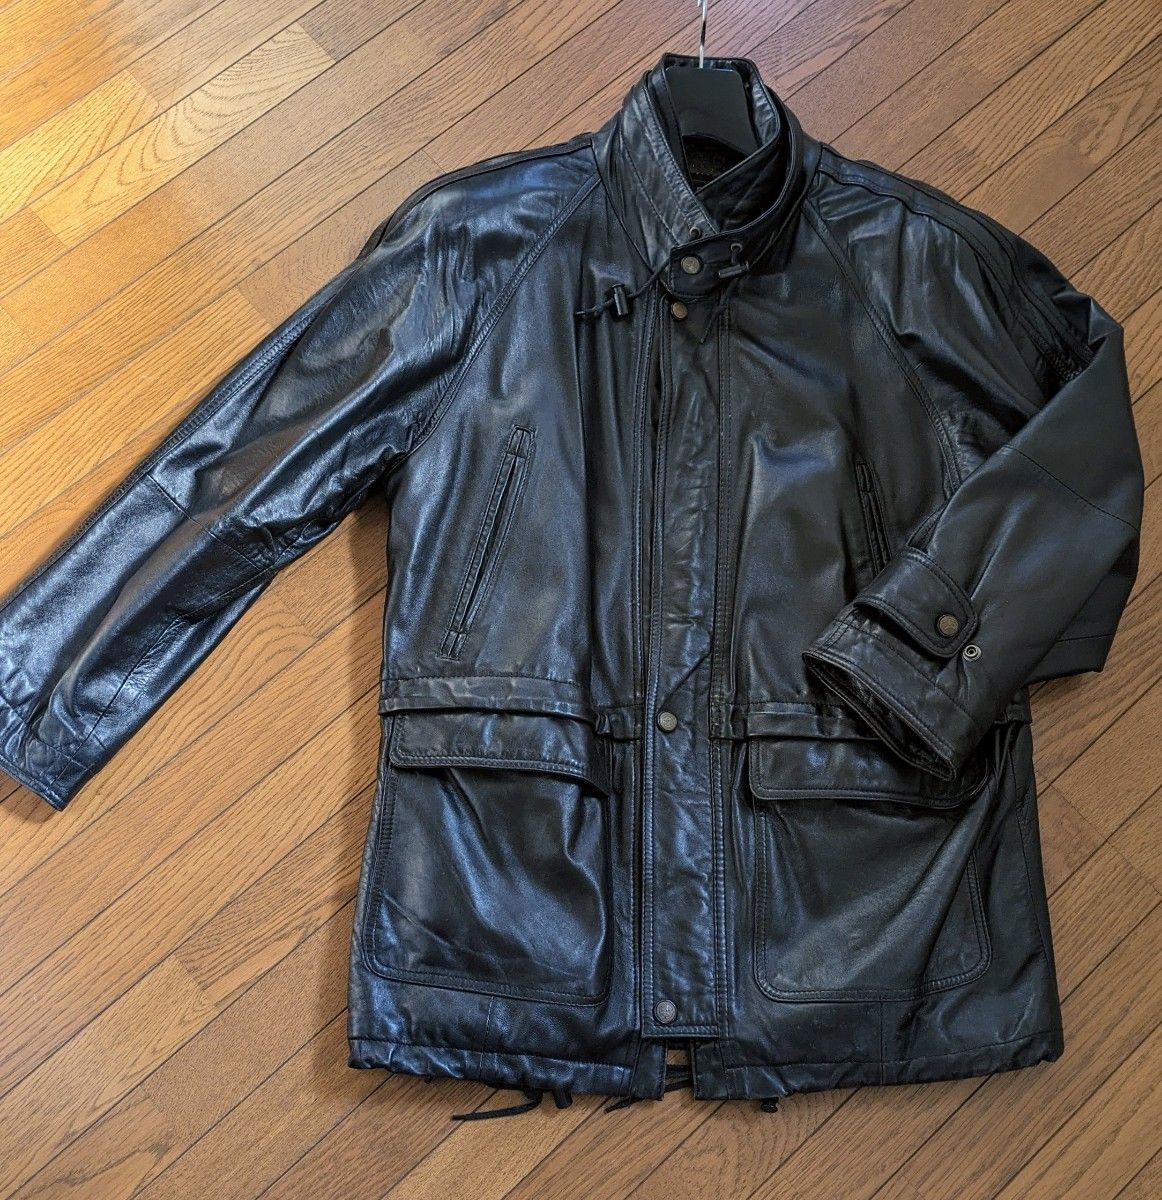 SK Leather ラムレザージャケット Lサイズ 韓国製 ライダース ハーフコート ラムレザーコート 本革 ブラック 防寒